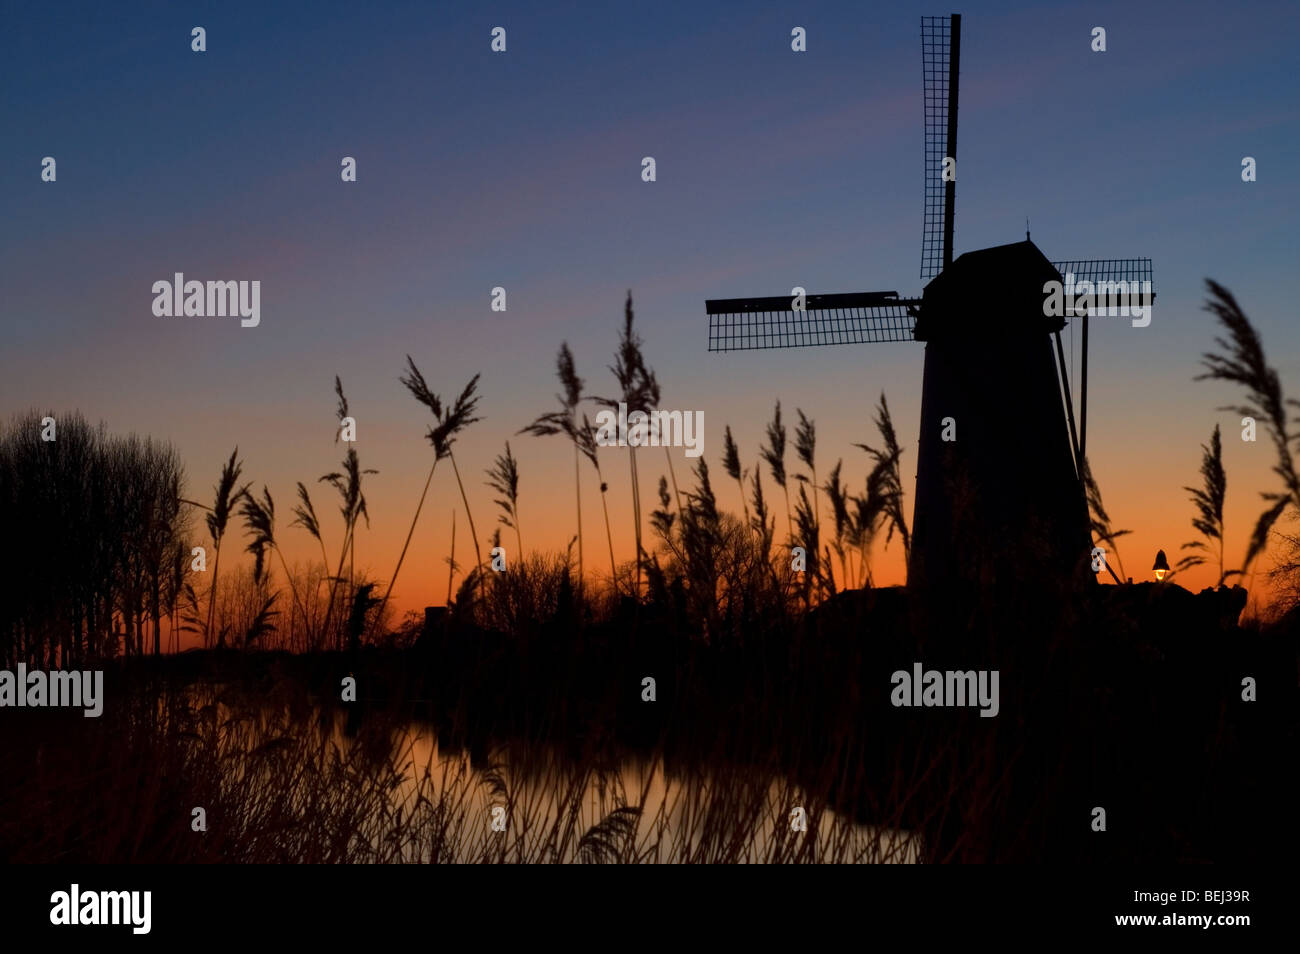 Le moulin à vent traditionnel Schellemolen au coucher du soleil le long du Canal de Damme, Damme, Flandre occidentale, Belgique Banque D'Images